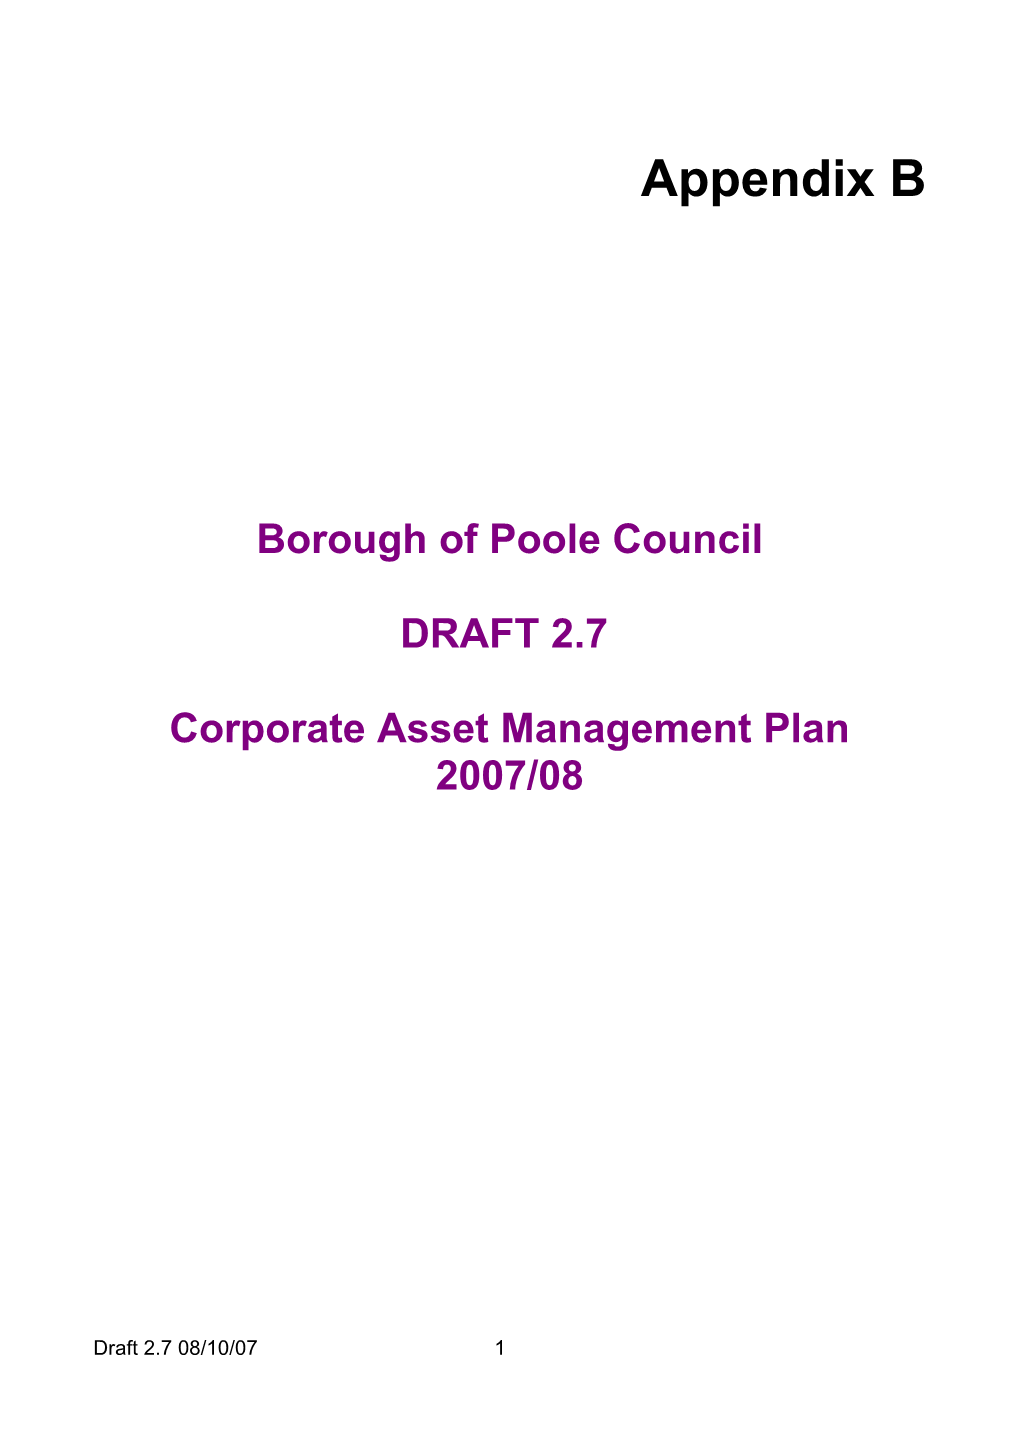 Corporate Asset Management Plan - Appendix B